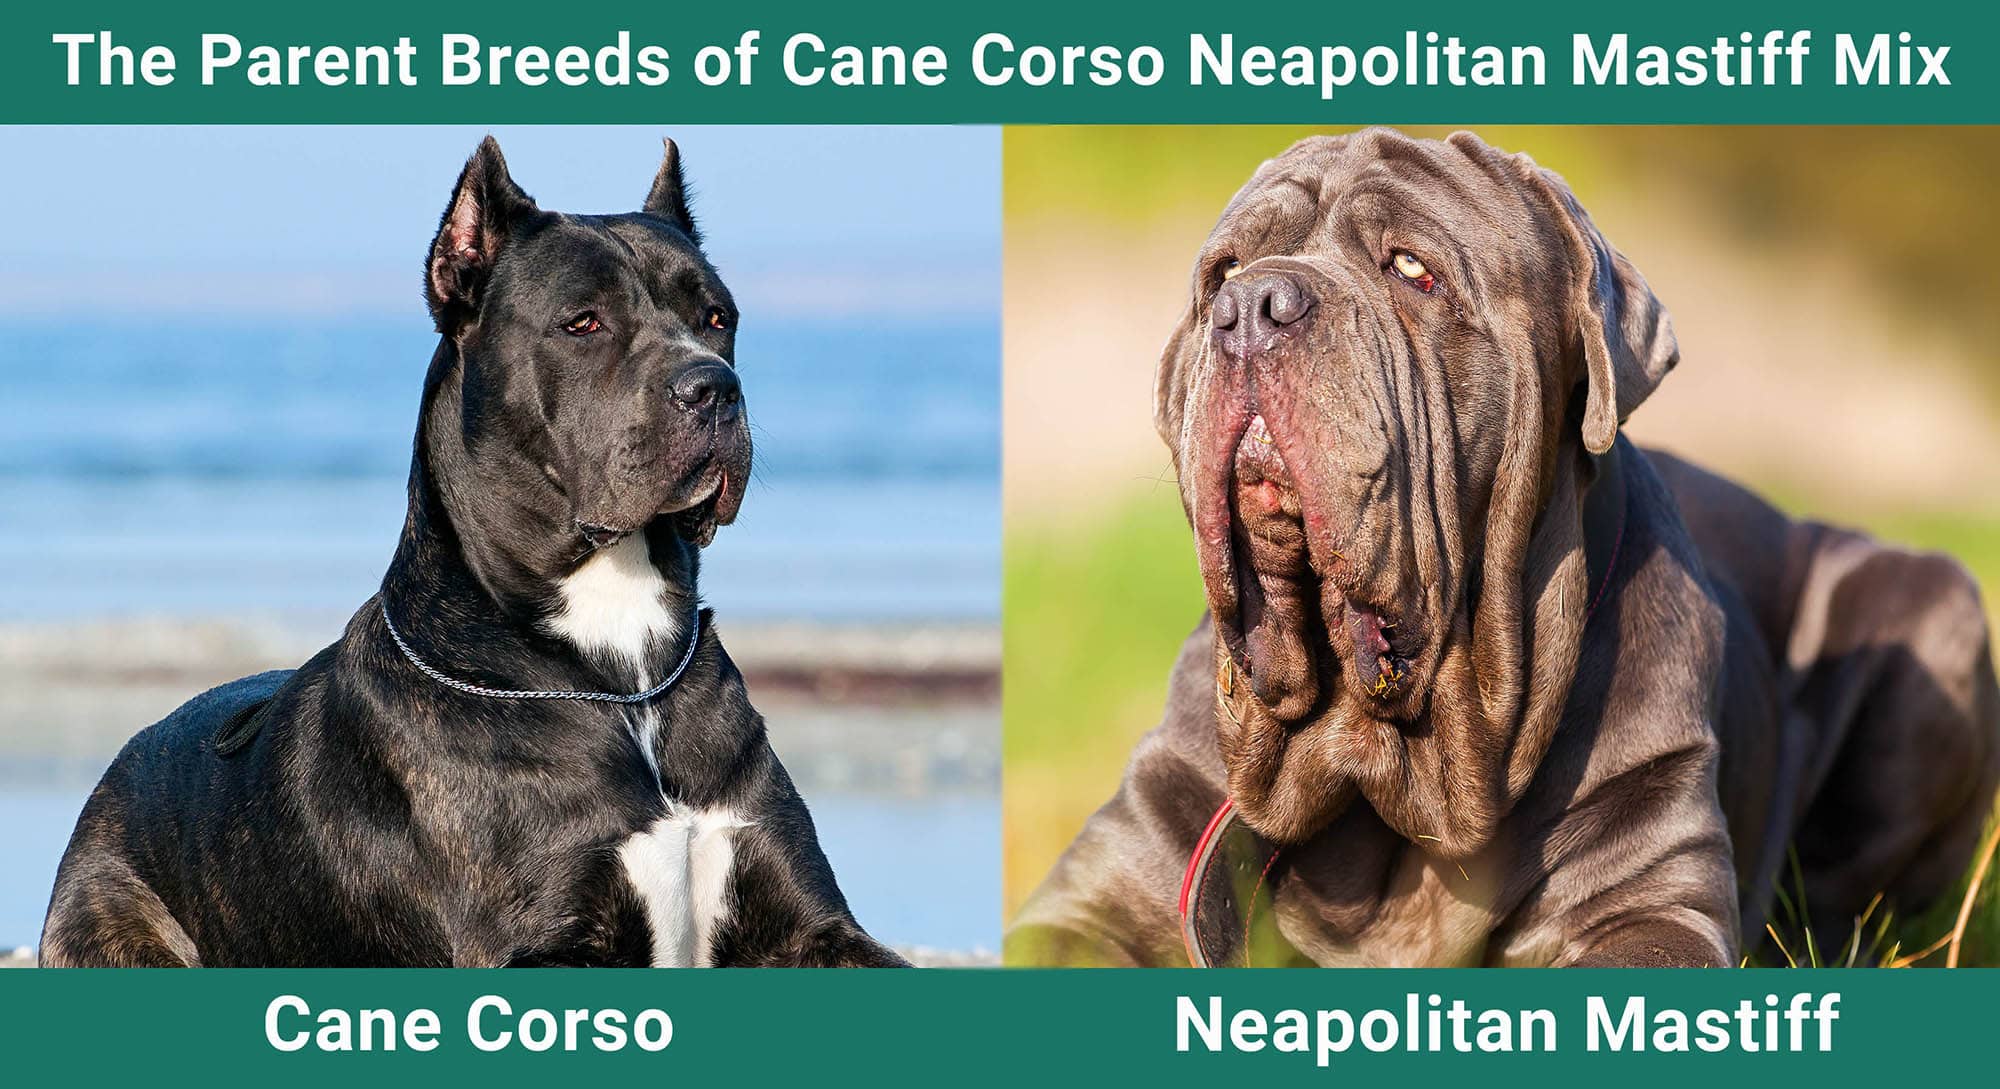 The Parent Breeds of Cane Corso Neapolitan Mastiff Mix